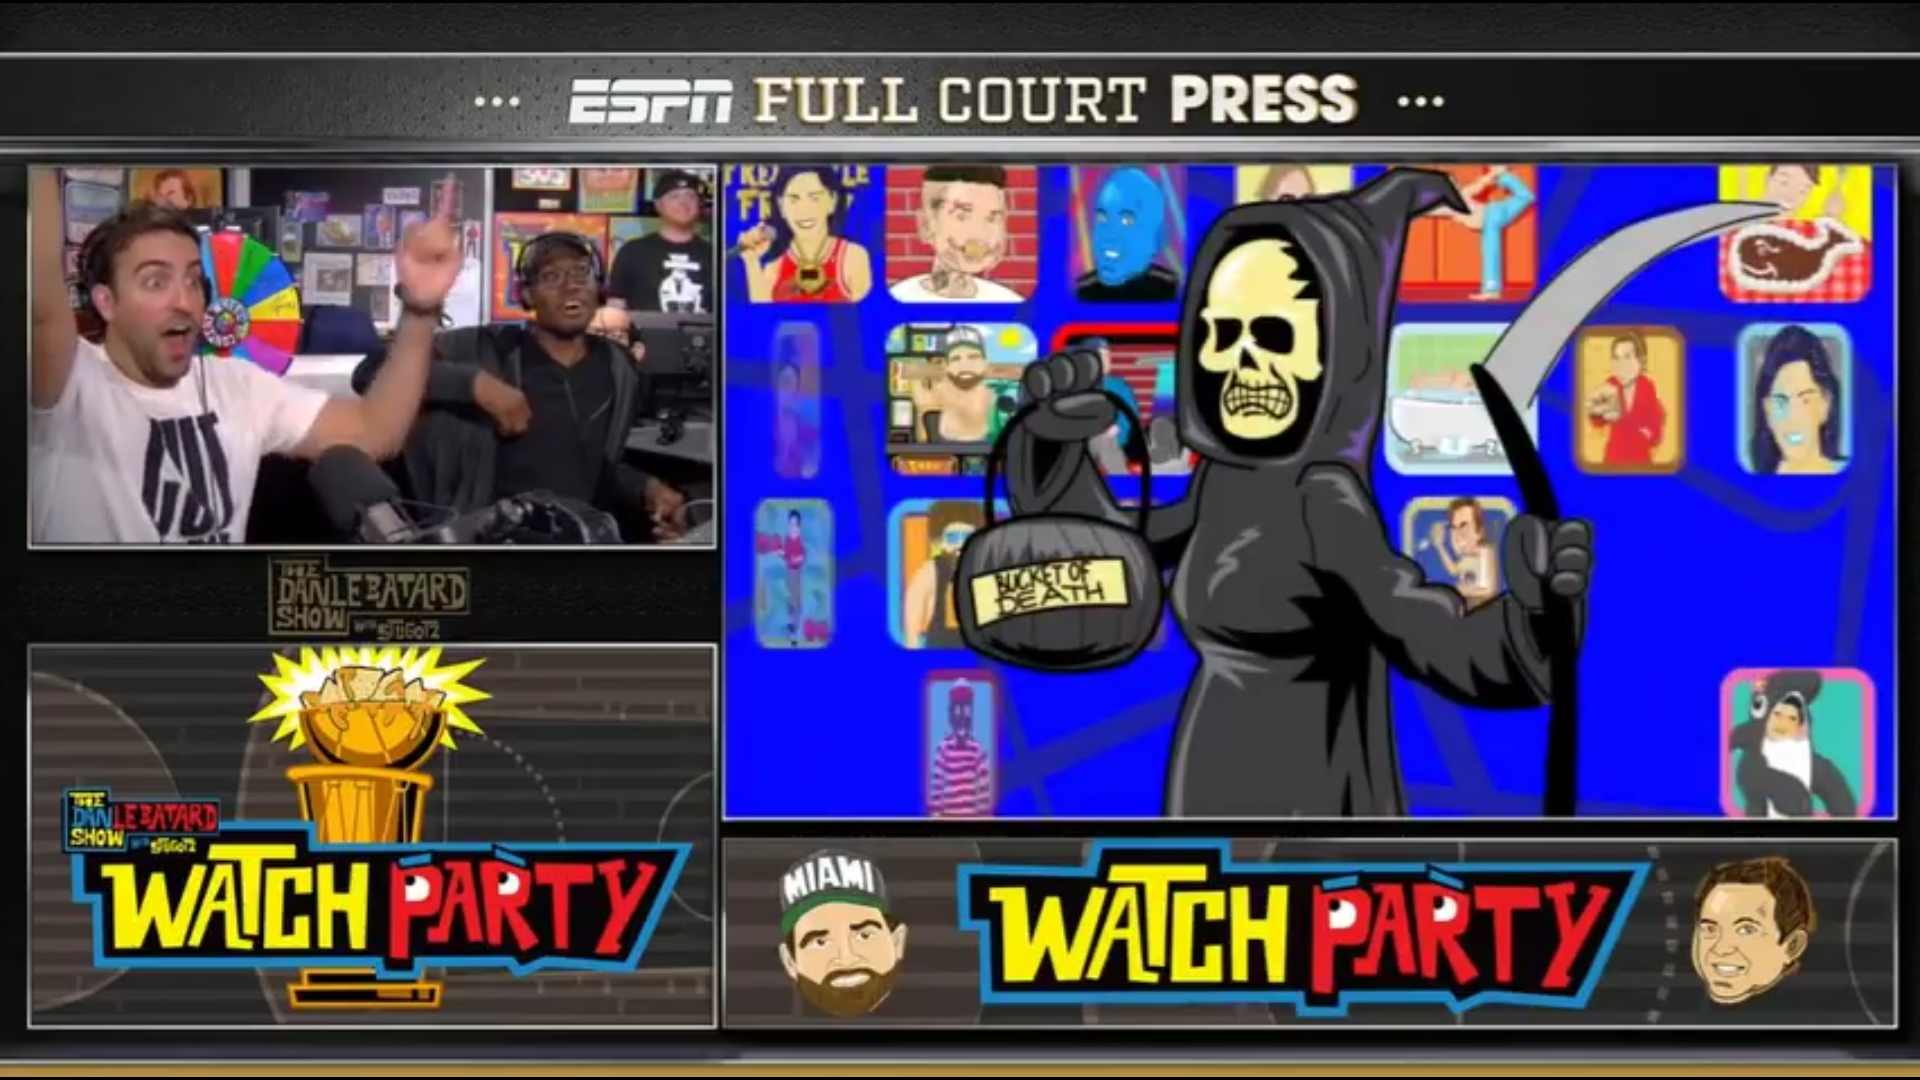 ESPN’s Full Court Press